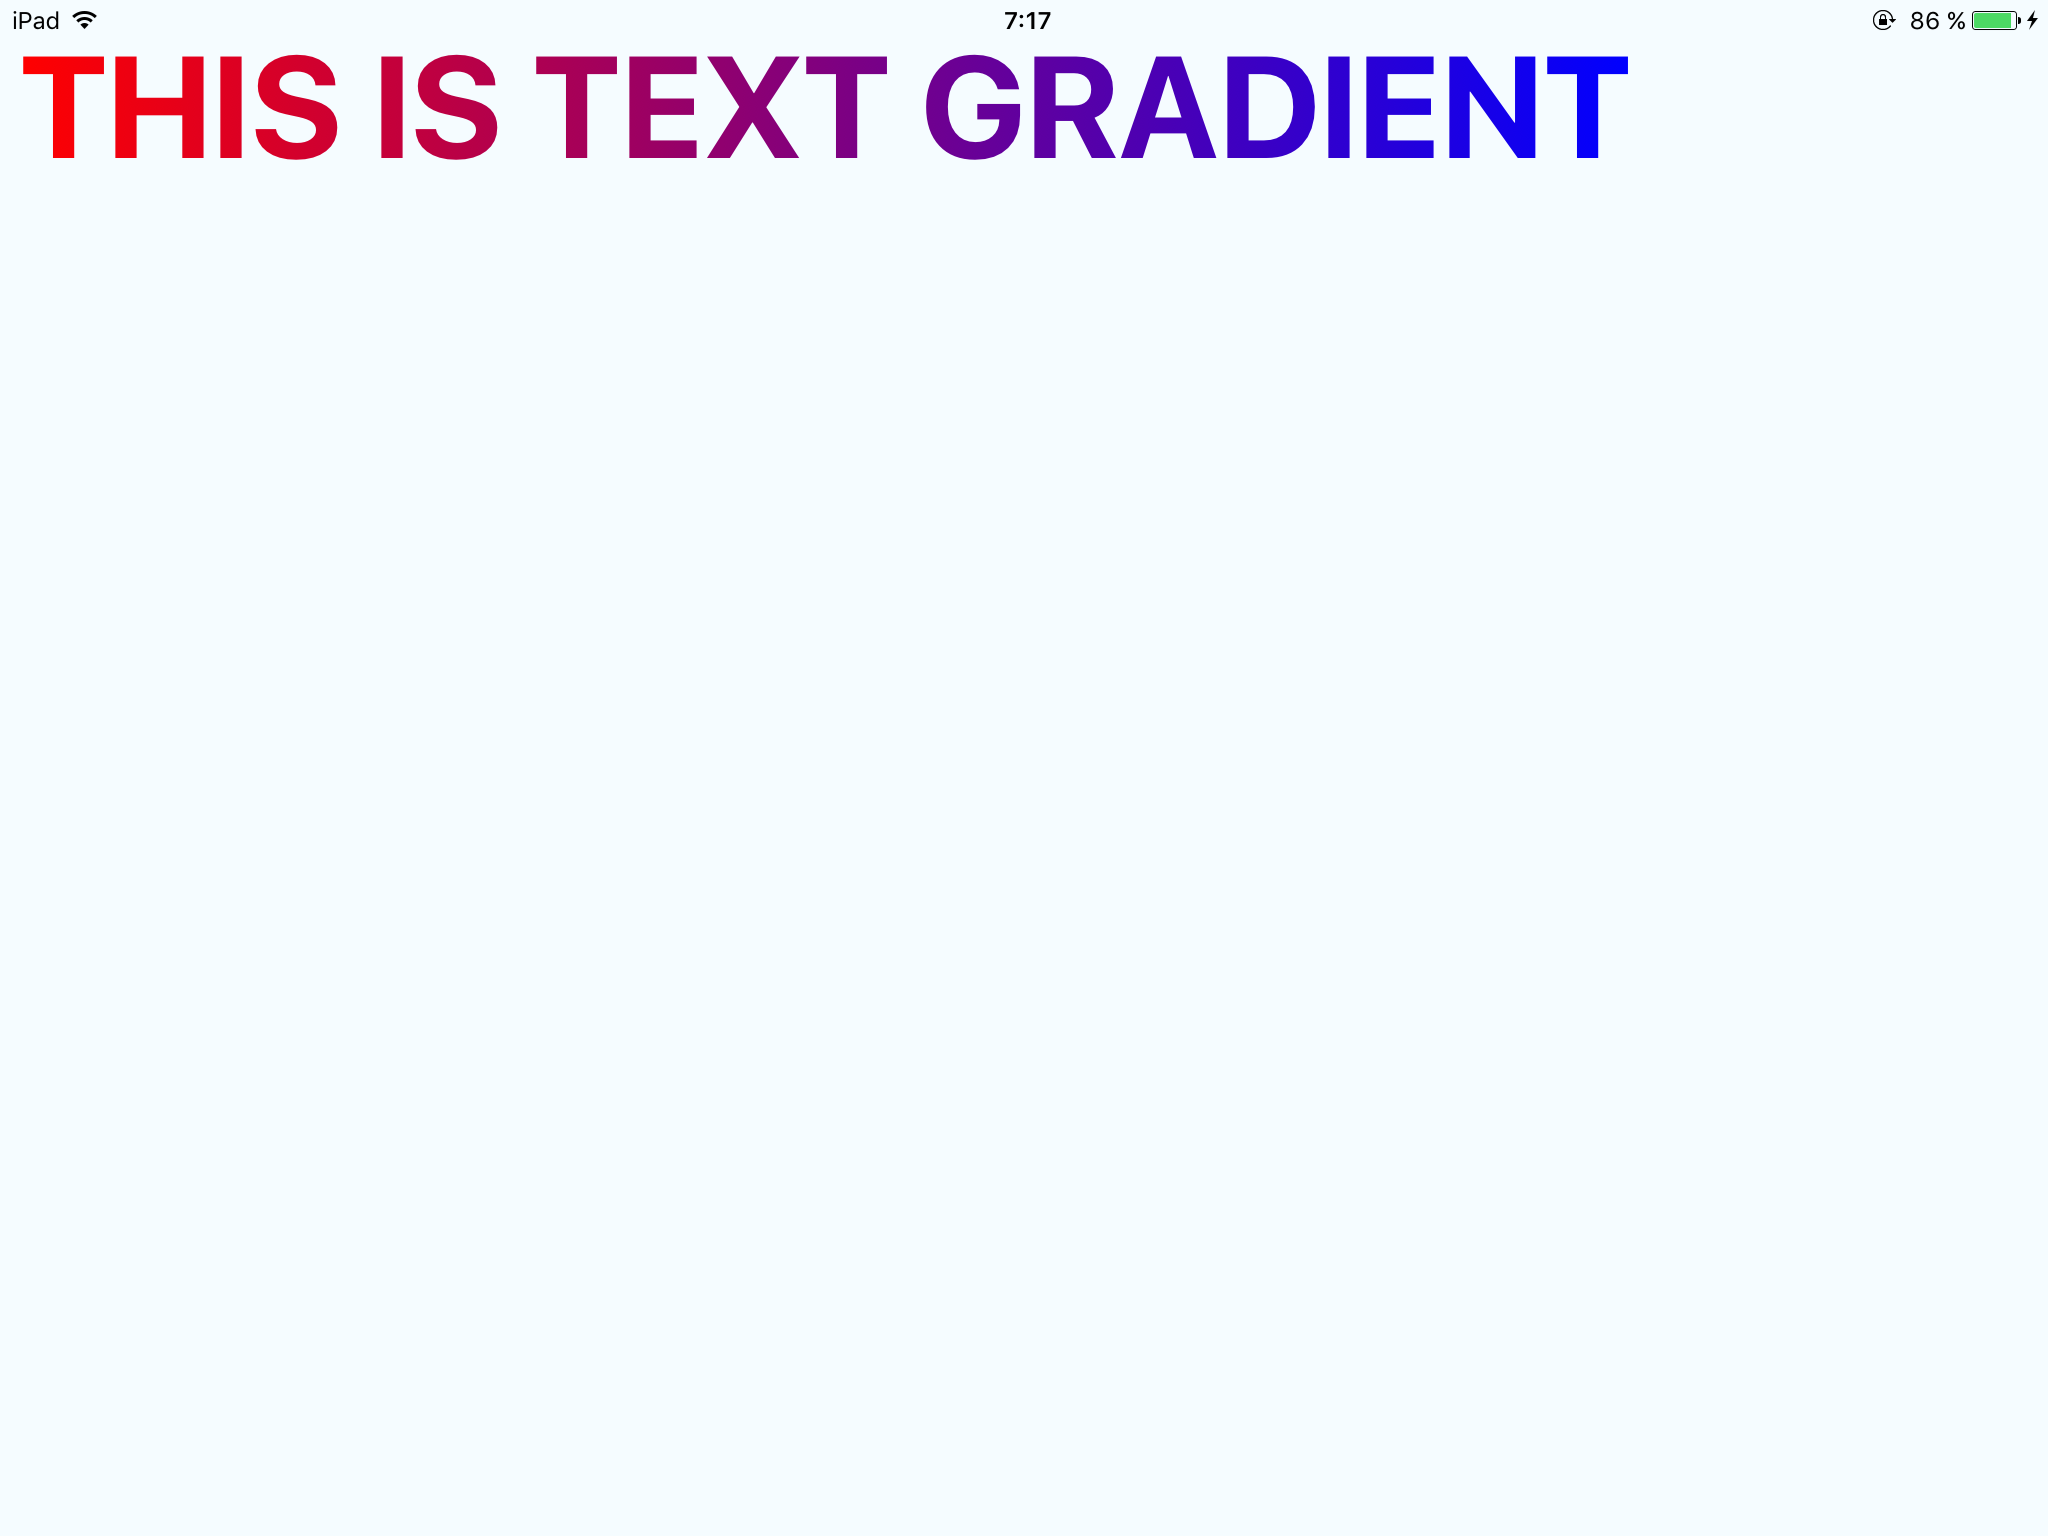 React-native-text-gradient là một công cụ độc đáo cho phép bạn tạo ra những gradient chữ đẹp mắt trên ứng dụng của mình. Hãy click để xem hình ảnh liên quan và khám phá thêm tính năng mới lạ này.